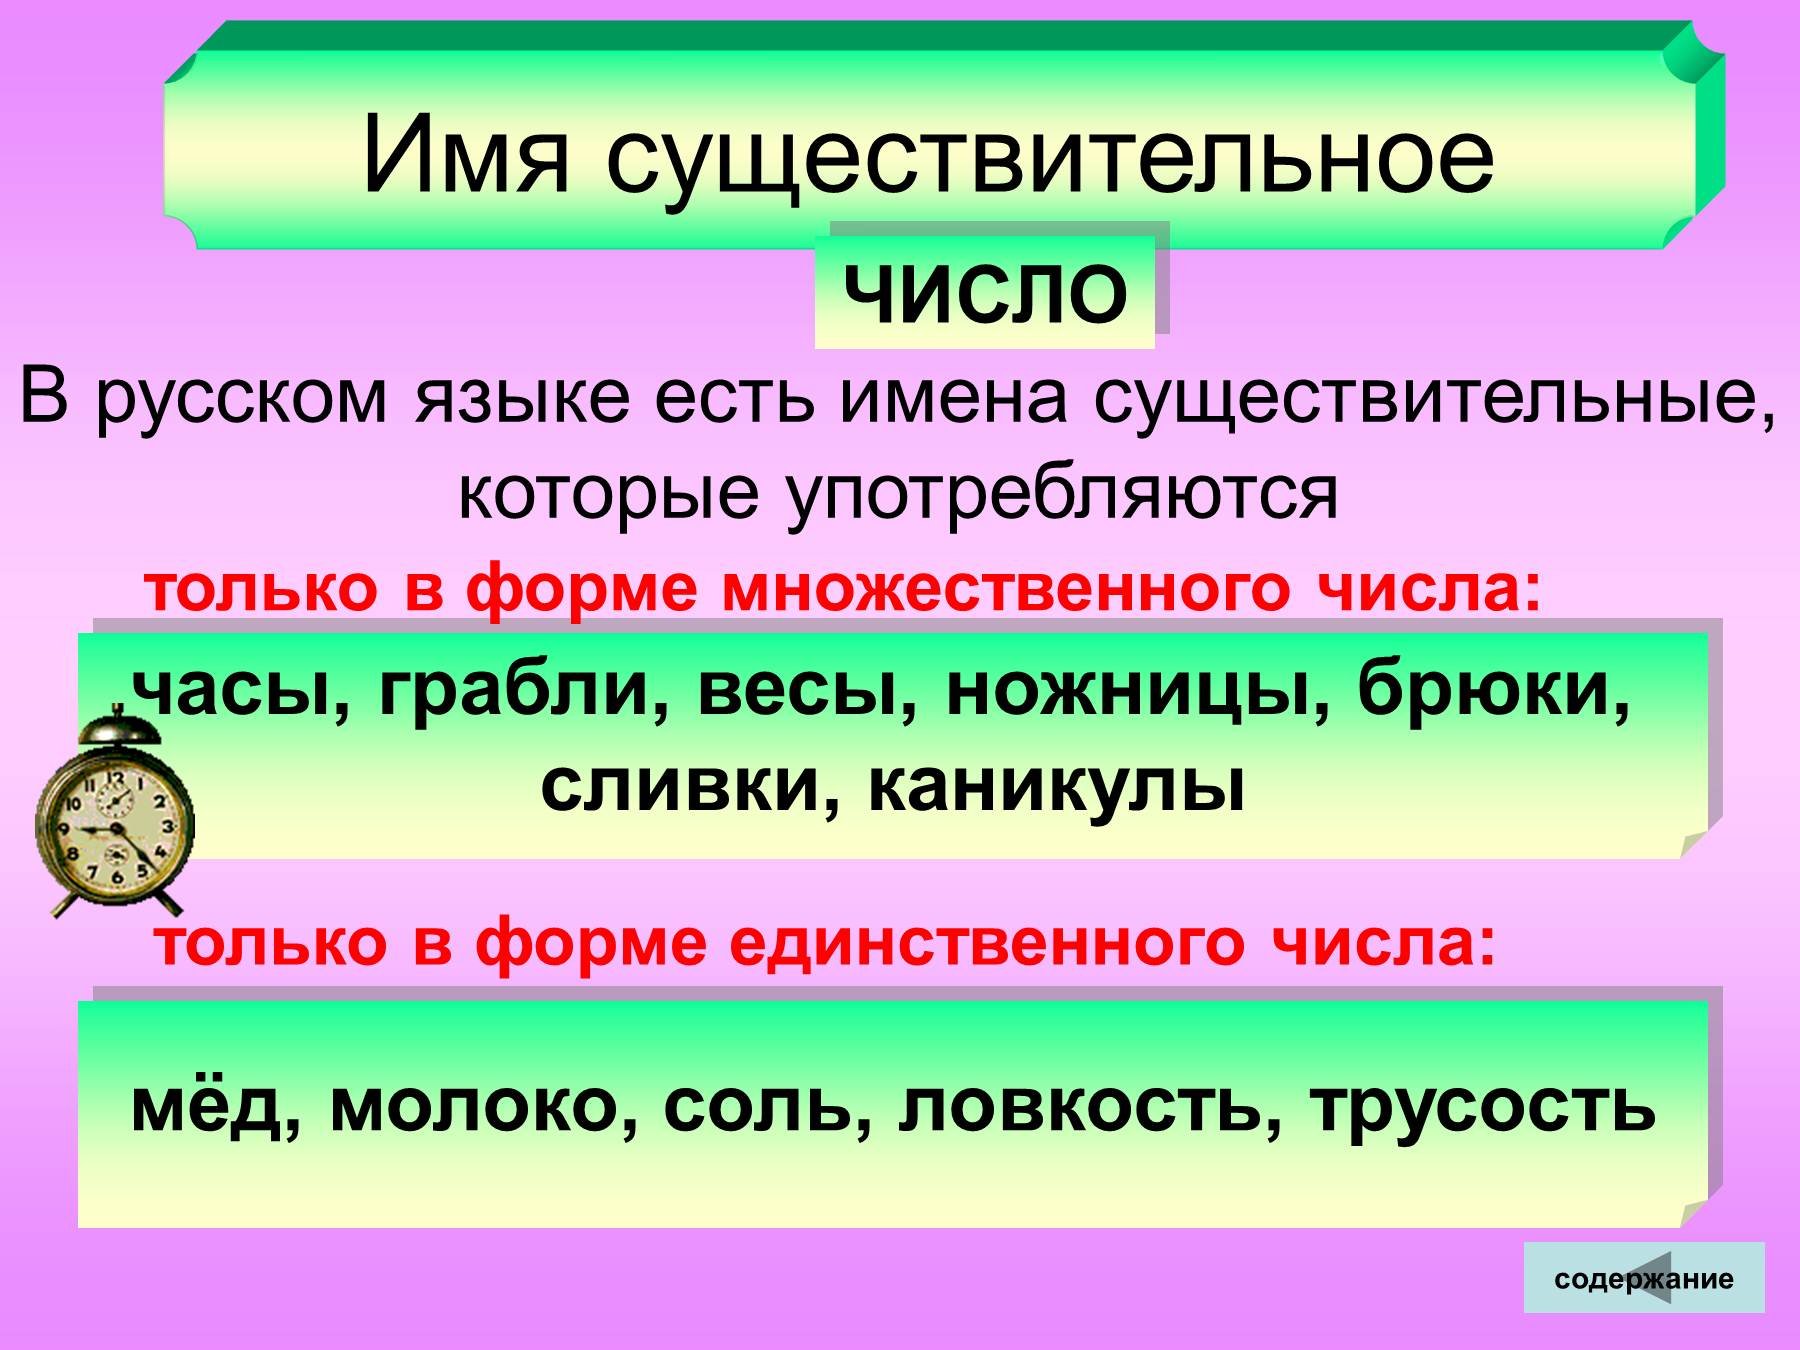 Составленные группы имен существительных. Чимслоимен существительных. Число имен существительных. Имена существительные единственного и множественного числа. Числа имен существительных в русском языке.